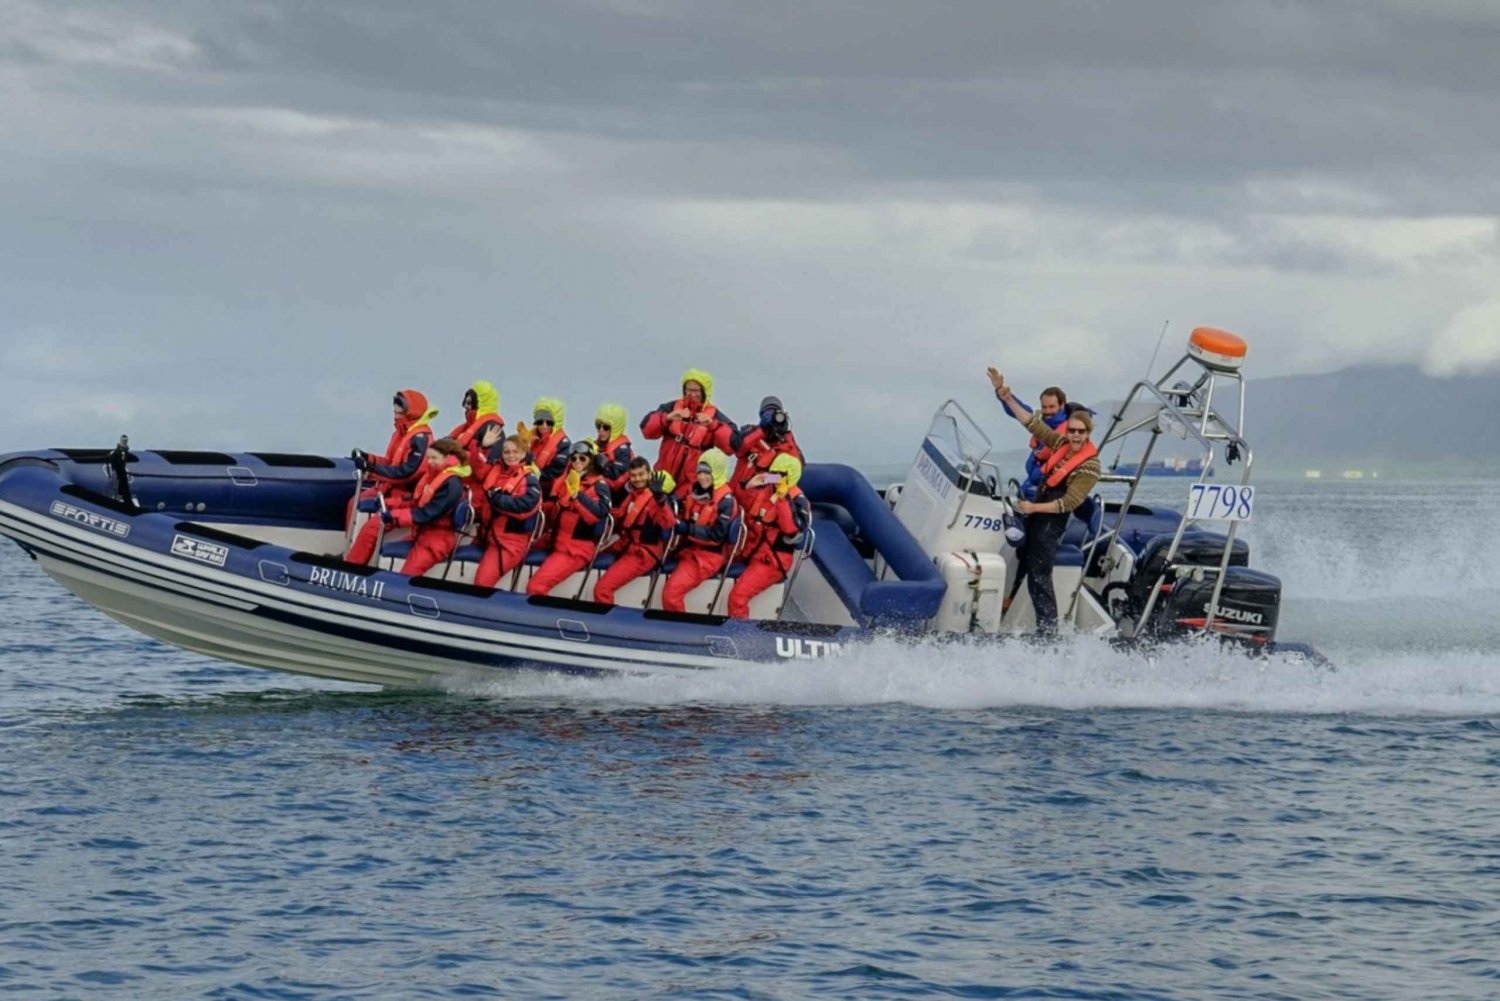 Reykjavik: Premium walvissen kijken met flexibel ticket